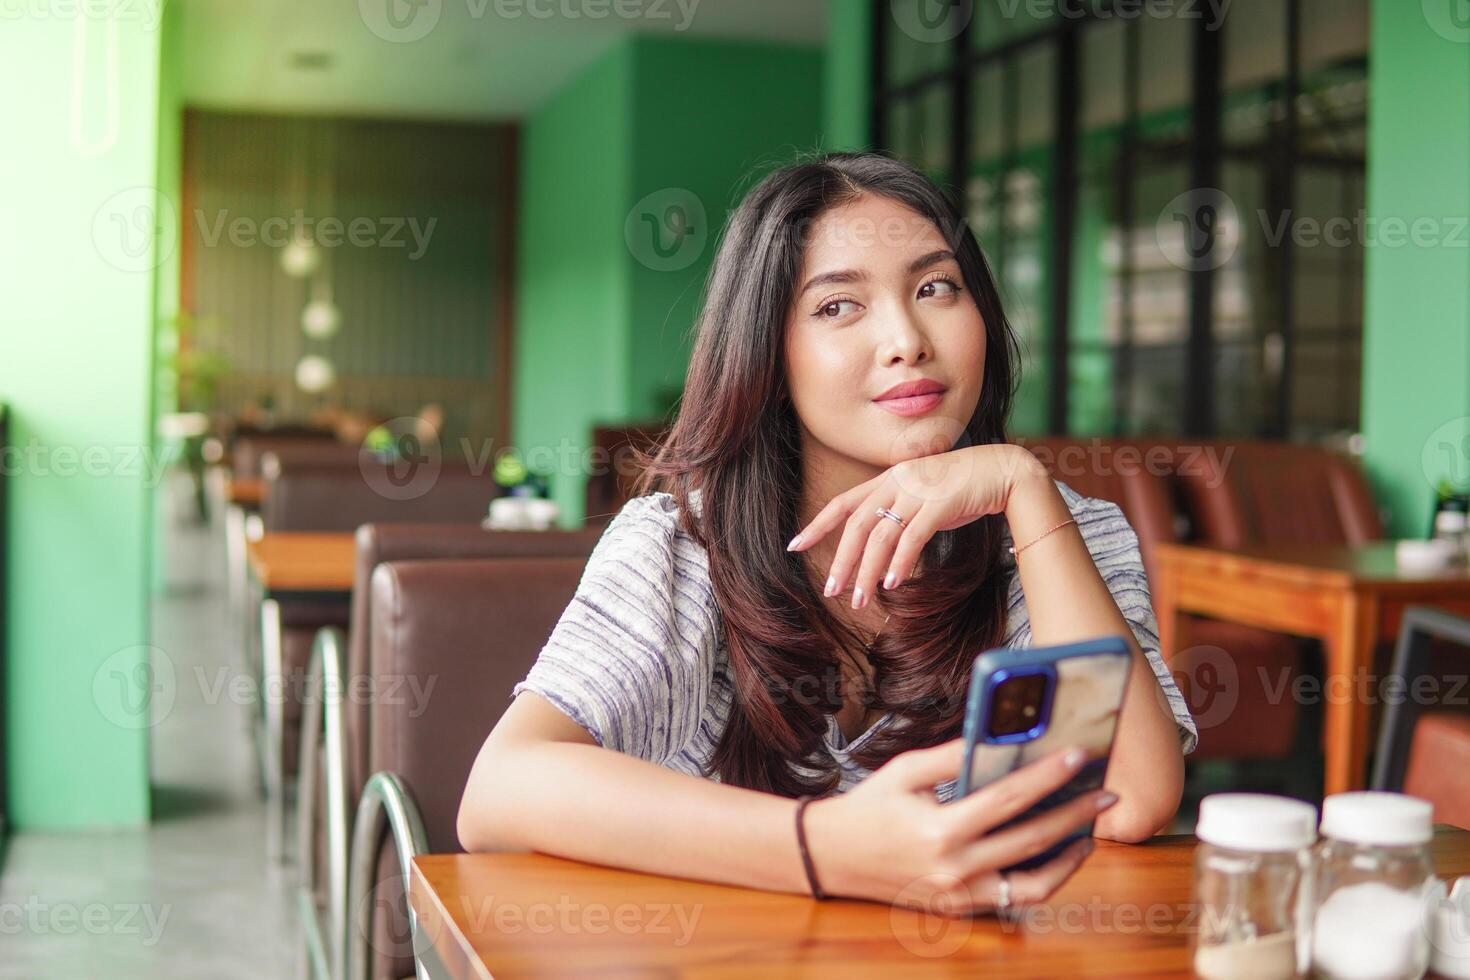 dagdrömma ung asiatisk kvinna bär klänning Sammanträde på en restaurang för en frukost, innehav en smartphone medan stöttning henne haka förlorat i trodde foto